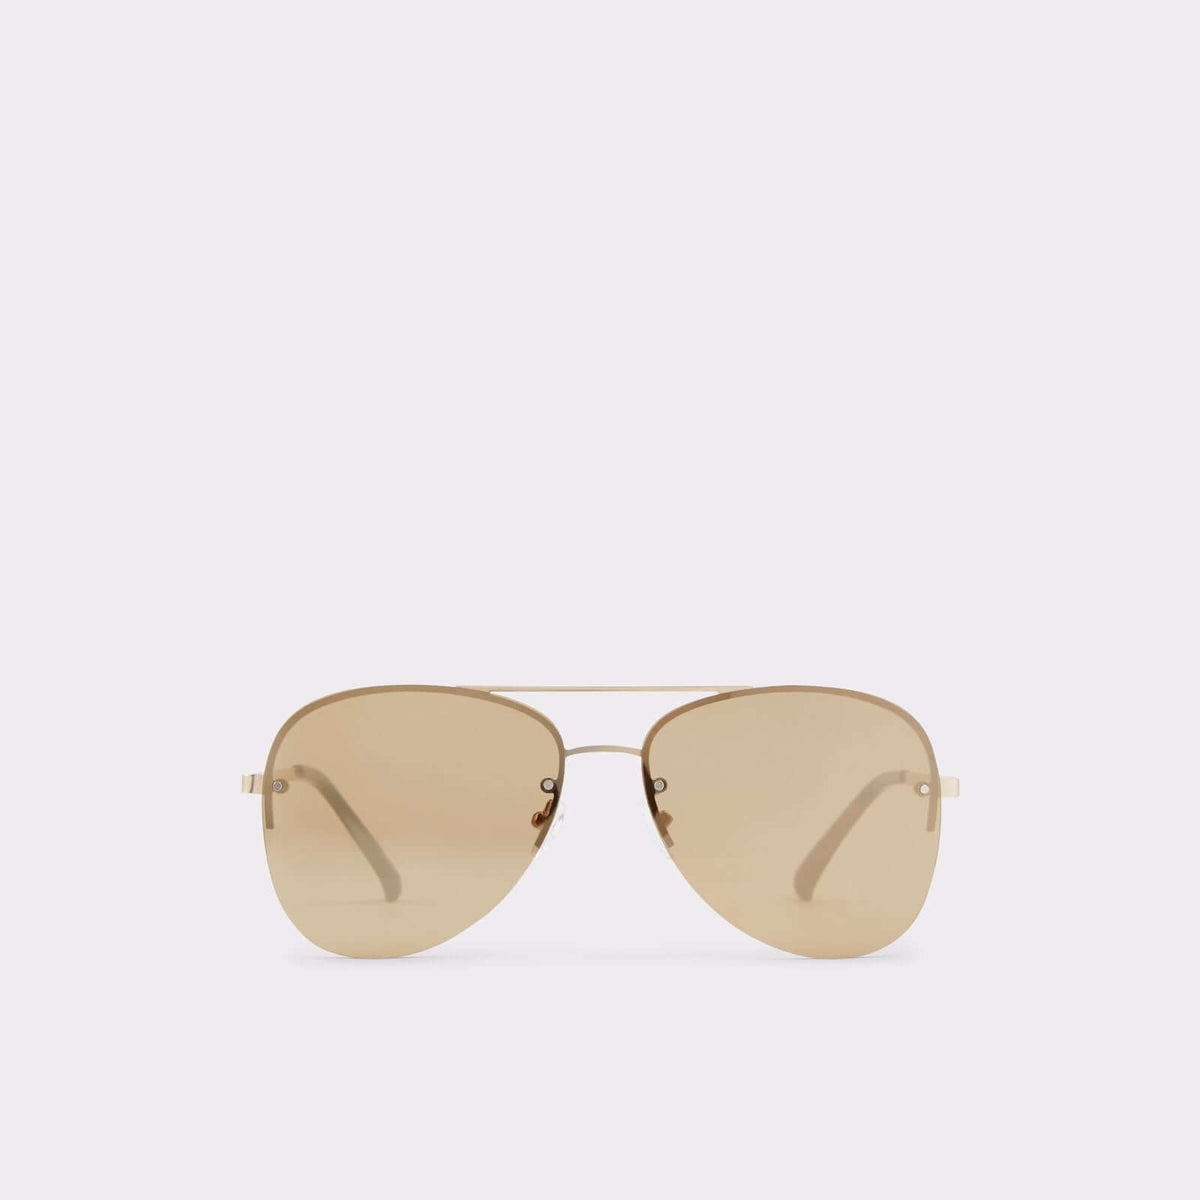 Aldo Men's Sunglasses Ascaride (Gold) – ALDO Shoes UK